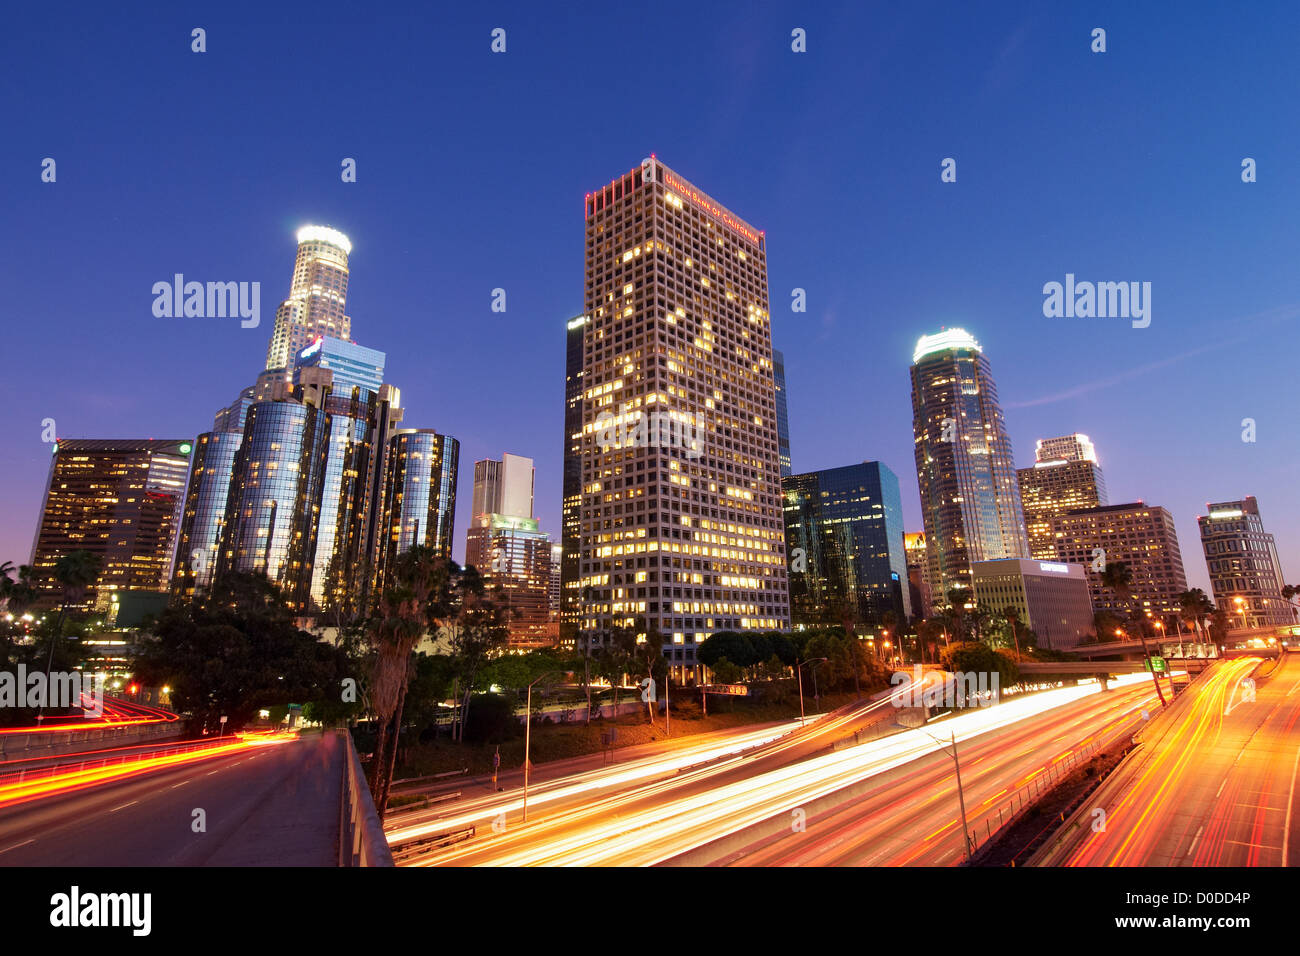 Interstate 110 Streiks durch die Innenstadt von Los Angeles. Langzeitbelichtung fängt Dämmerung Licht sowie Streifen Licht vorbeifahrenden Autos Stockfoto